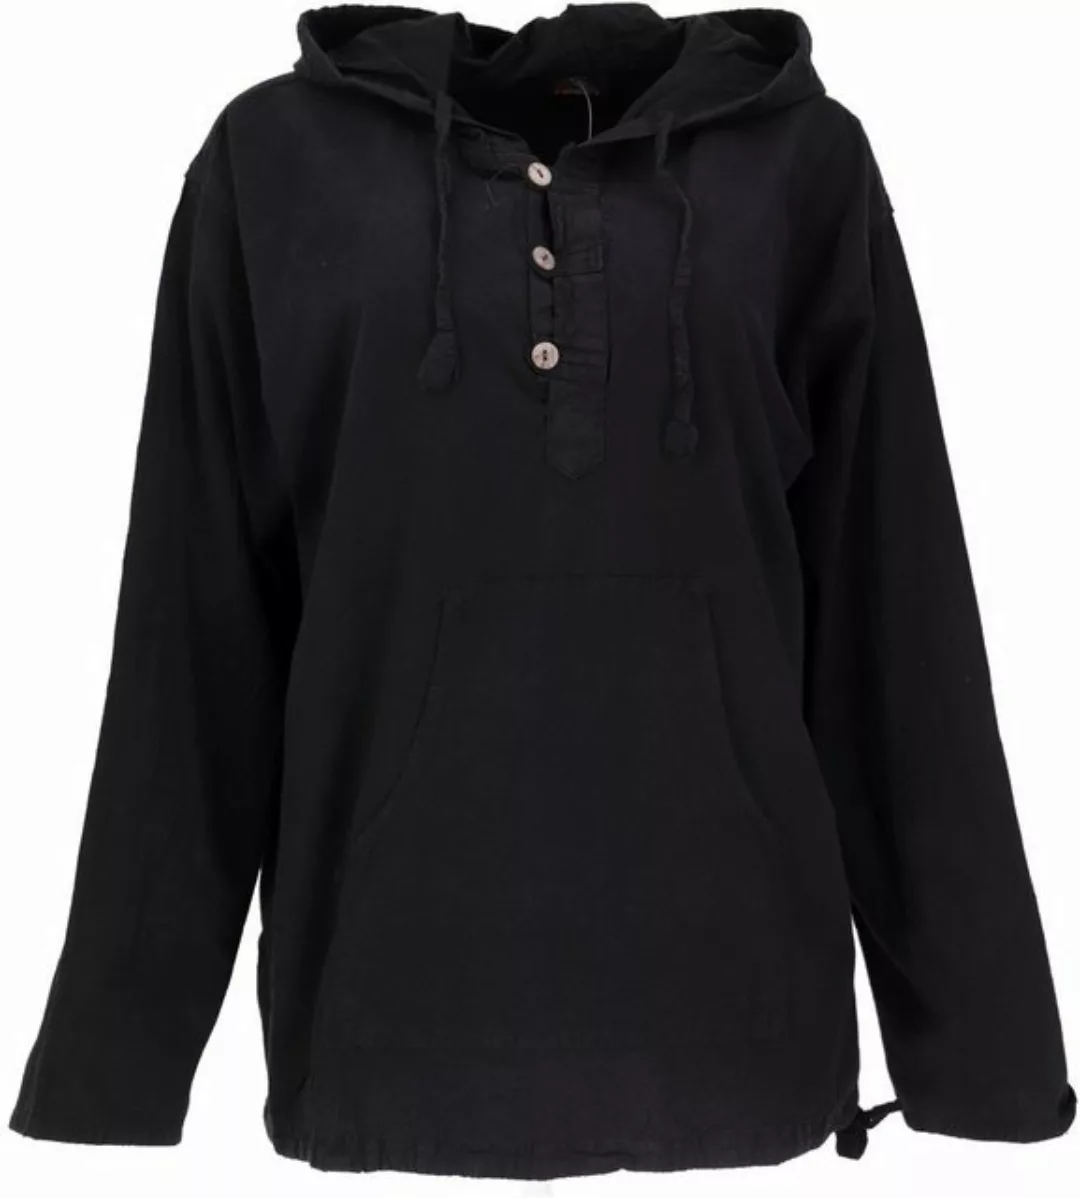 Guru-Shop Sweater Ethno Sweatshirt Goa Hippie - schwarz Ethno Style, altern günstig online kaufen